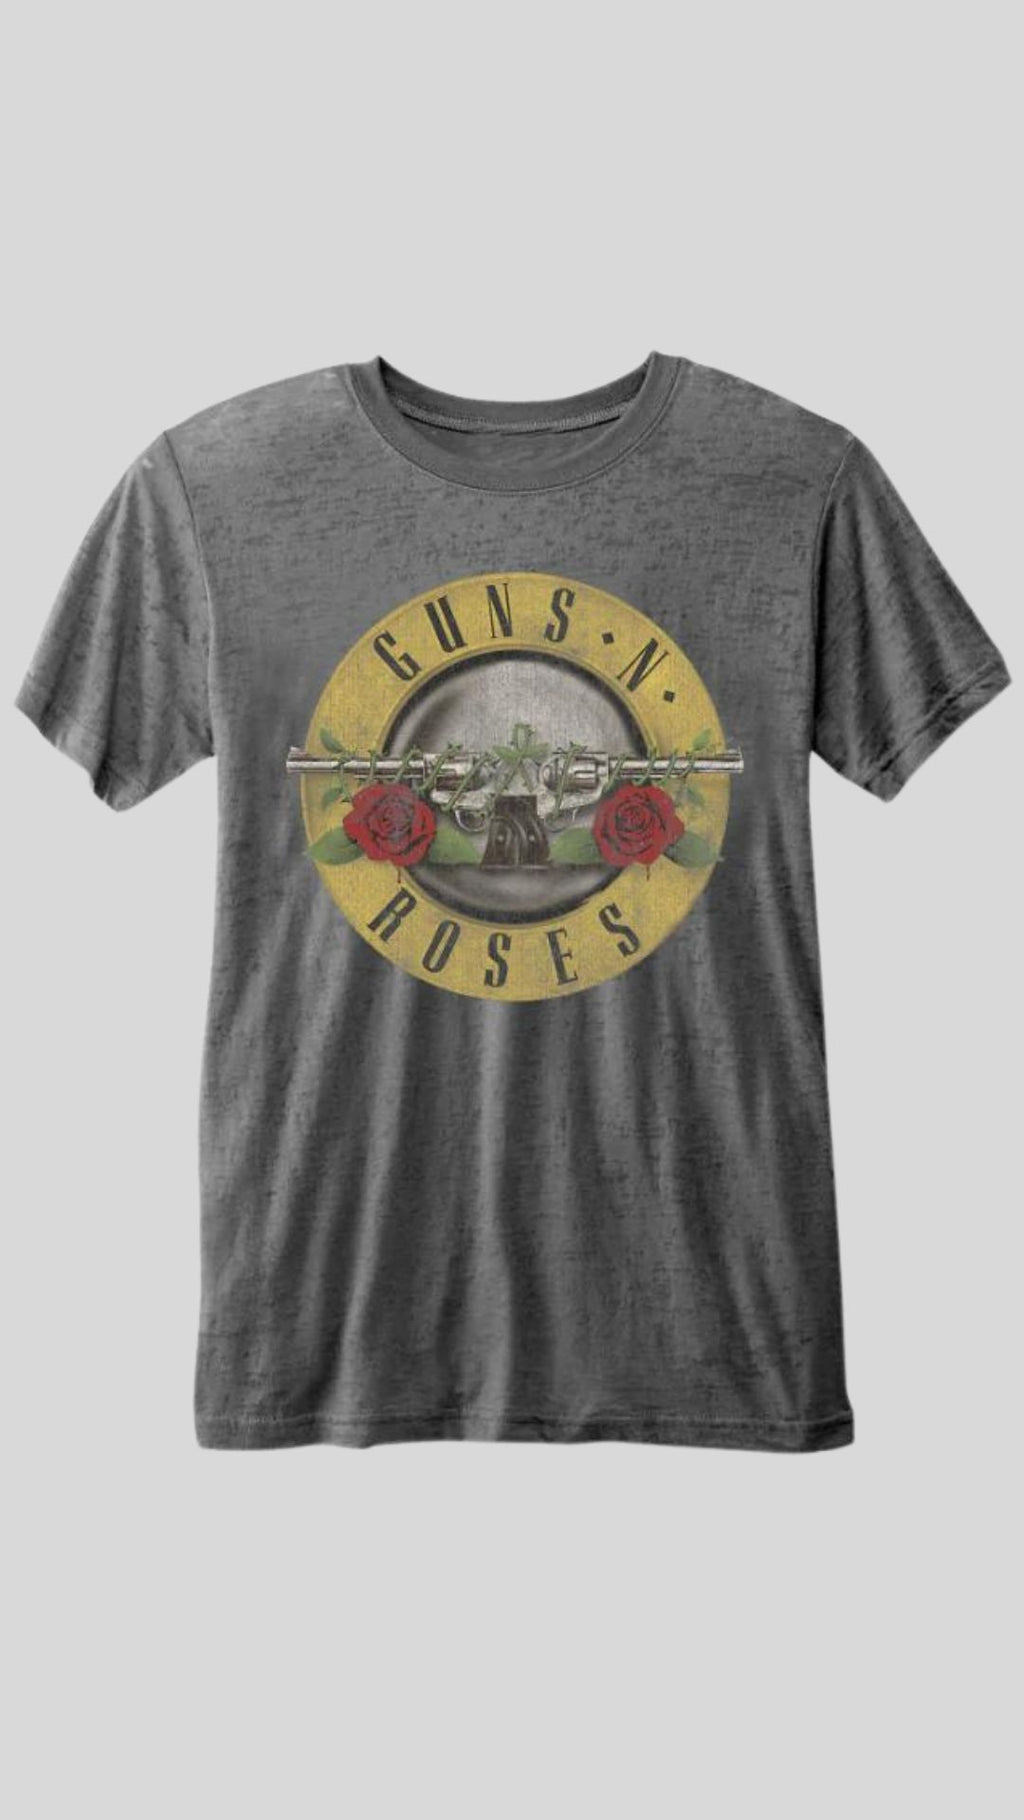 Guns N' Roses Unisex T-Shirt